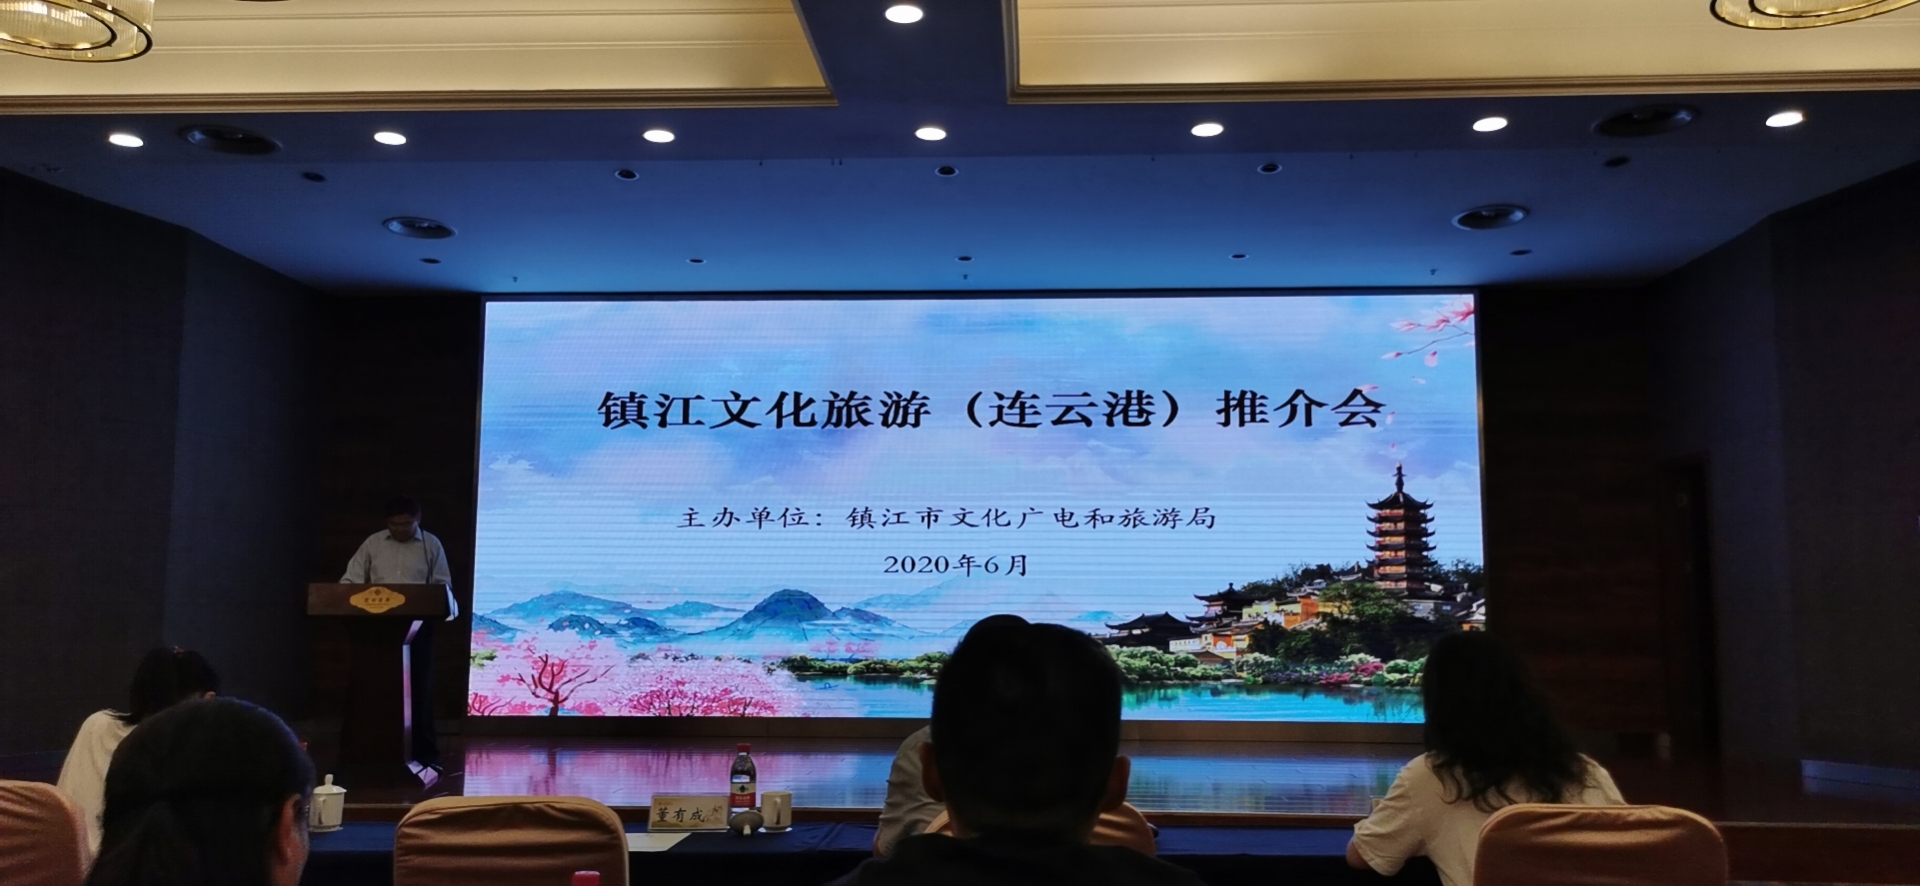 球王会:镇江文化旅游推介会在泉州举行